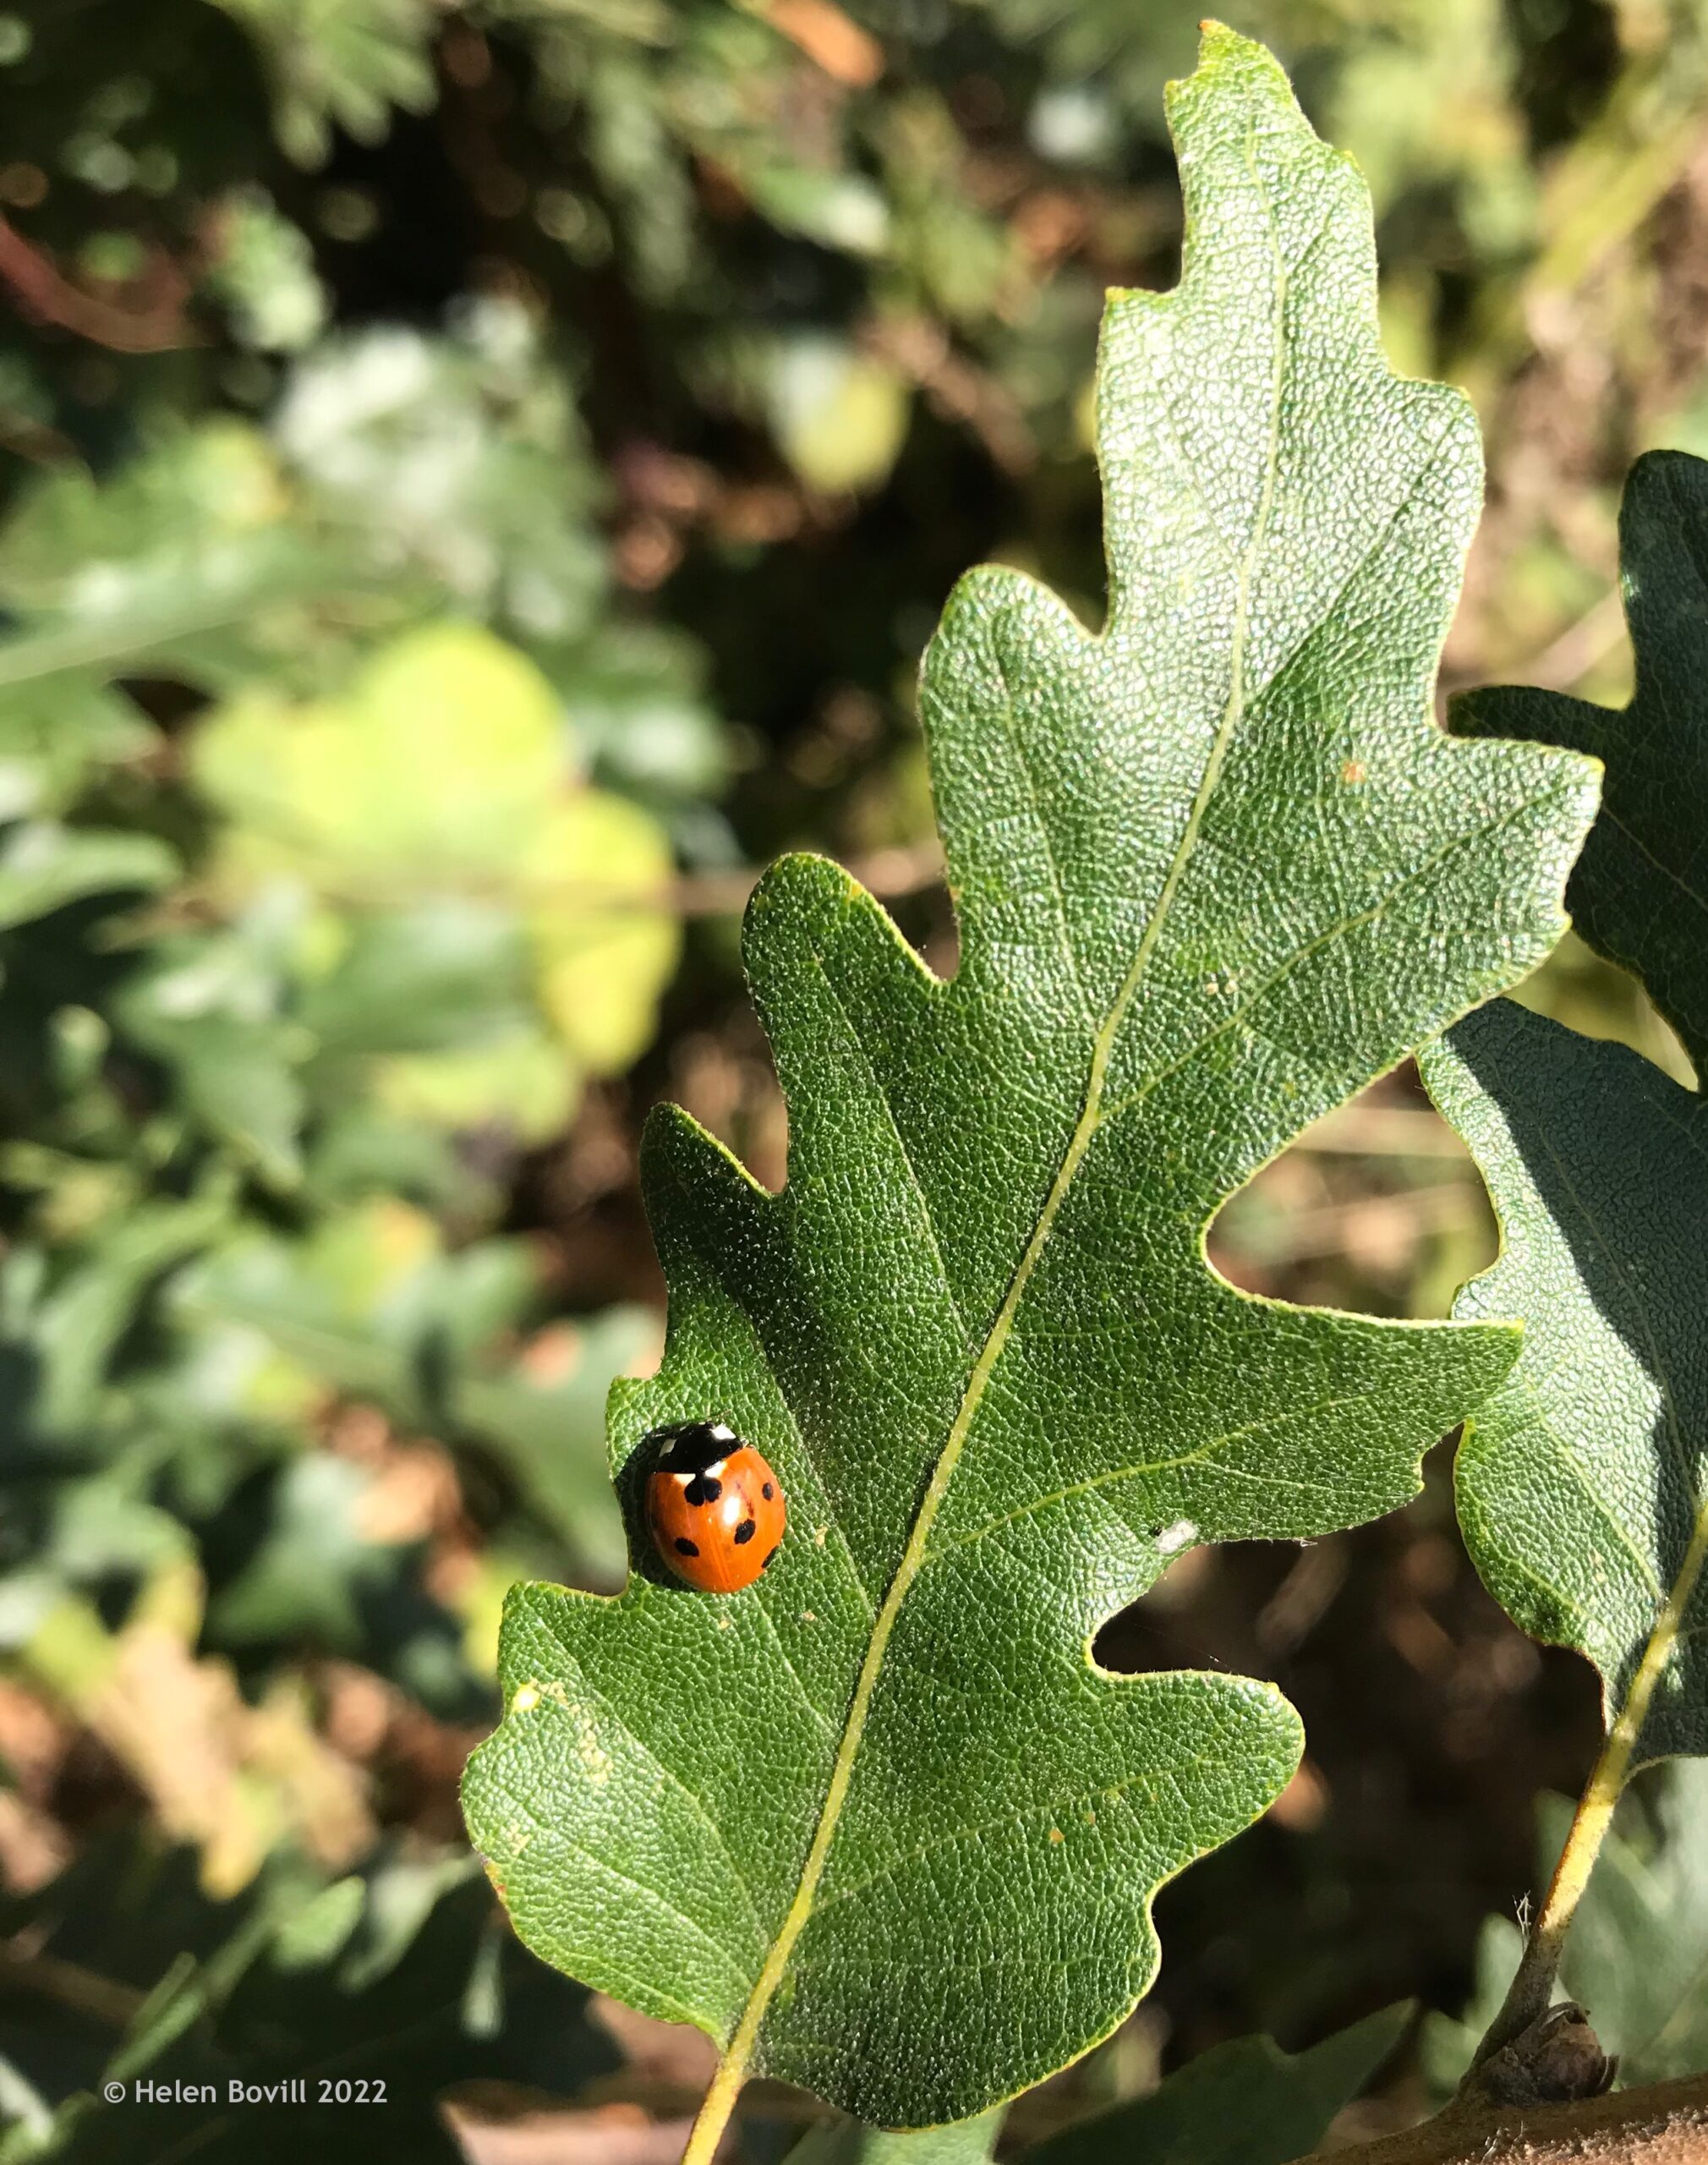 7-Spot Ladybird on an Oak leaf in tjee cemetery